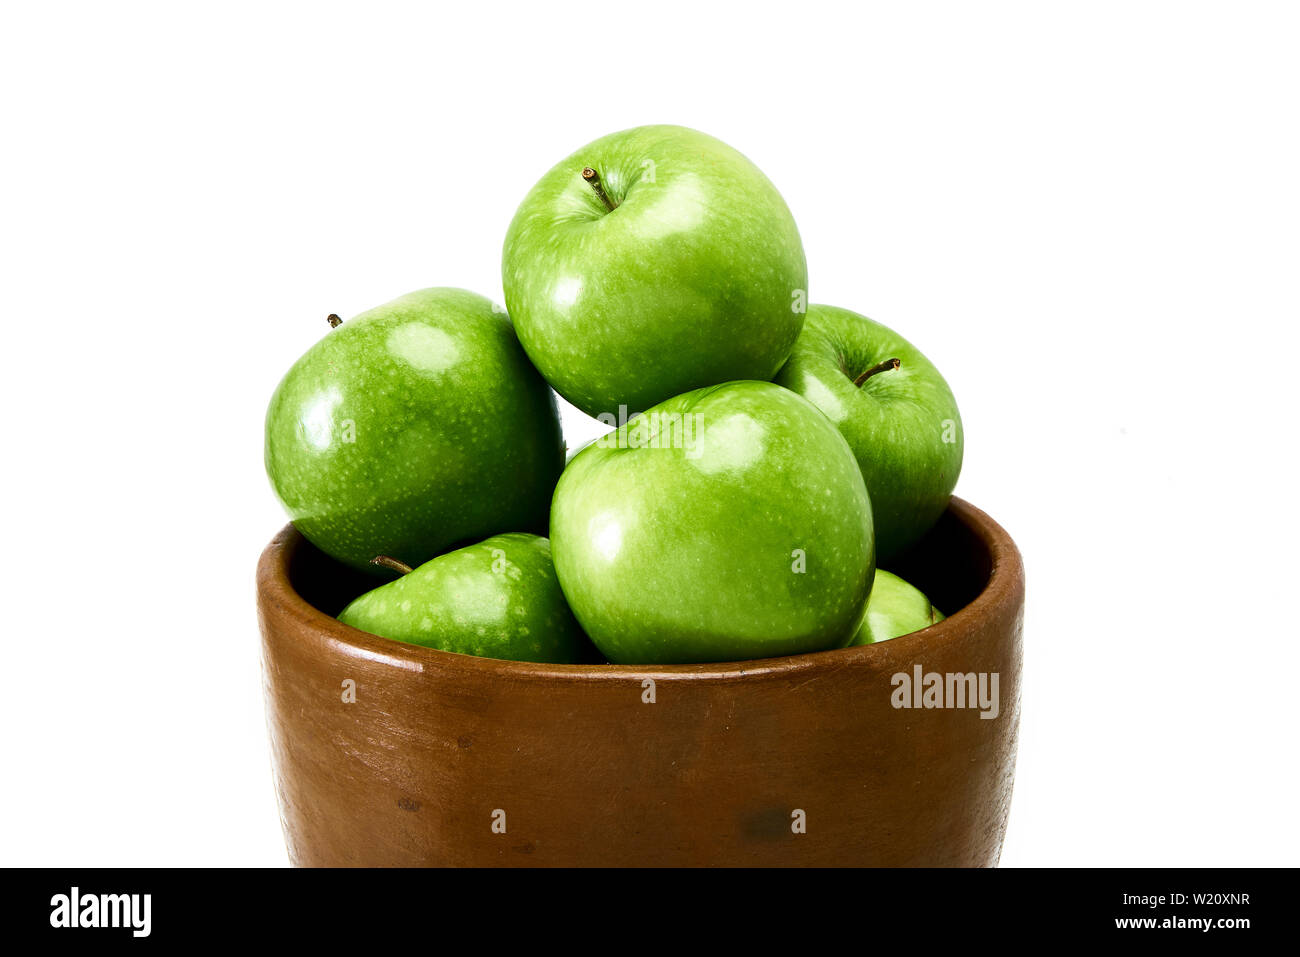 Un groupe de la cuisson des pommes Granny Smith verte dans un bol brun isolé sur un fond blanc. Banque D'Images